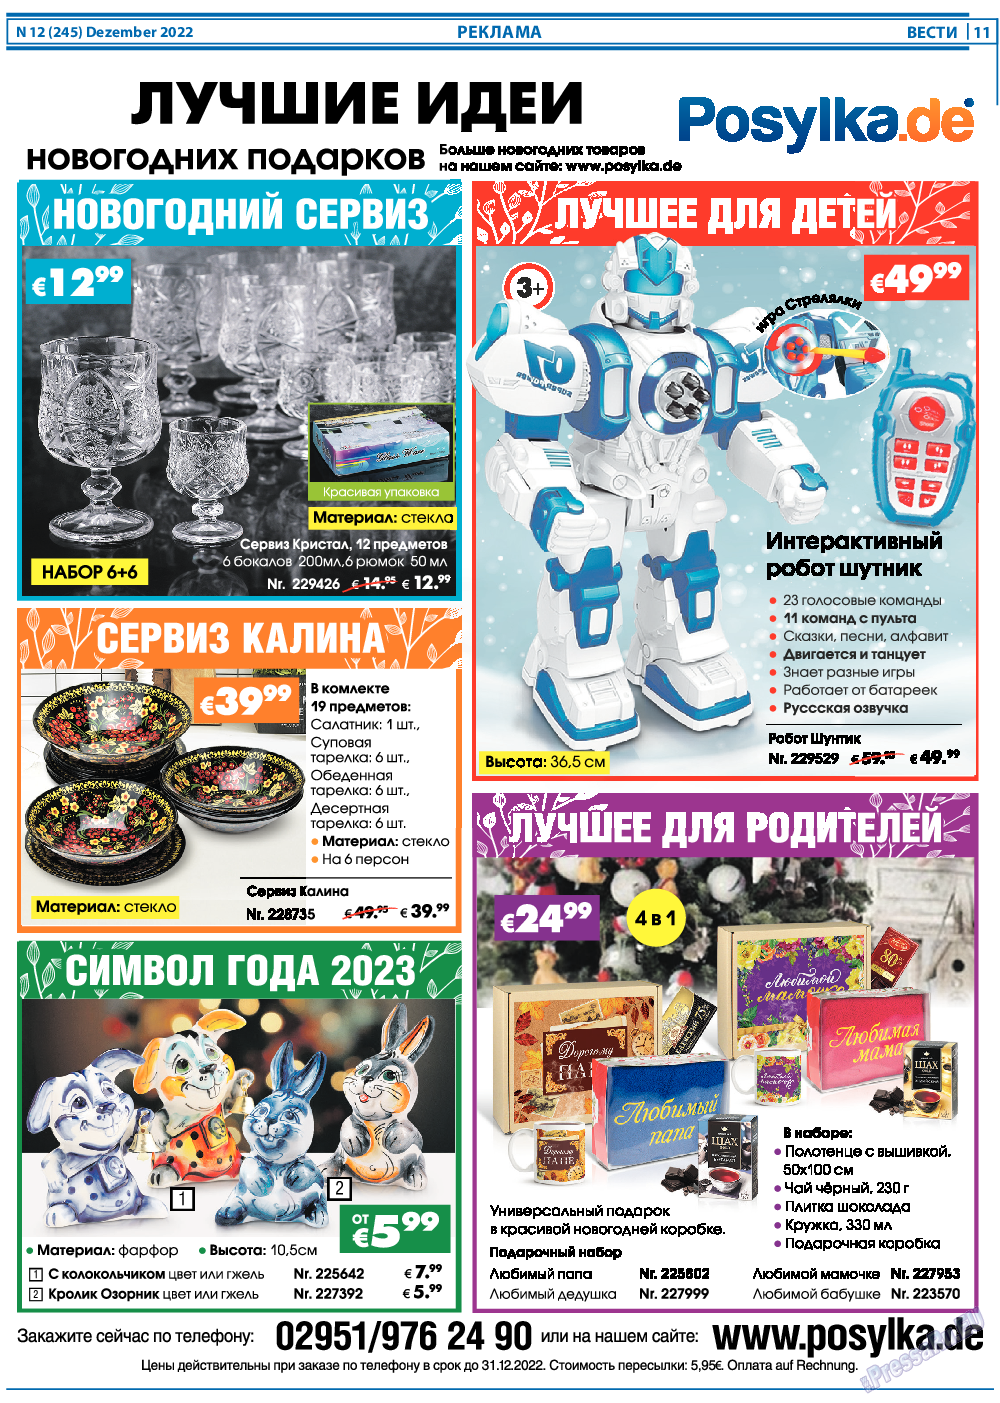 Вести, газета. 2022 №12 стр.11